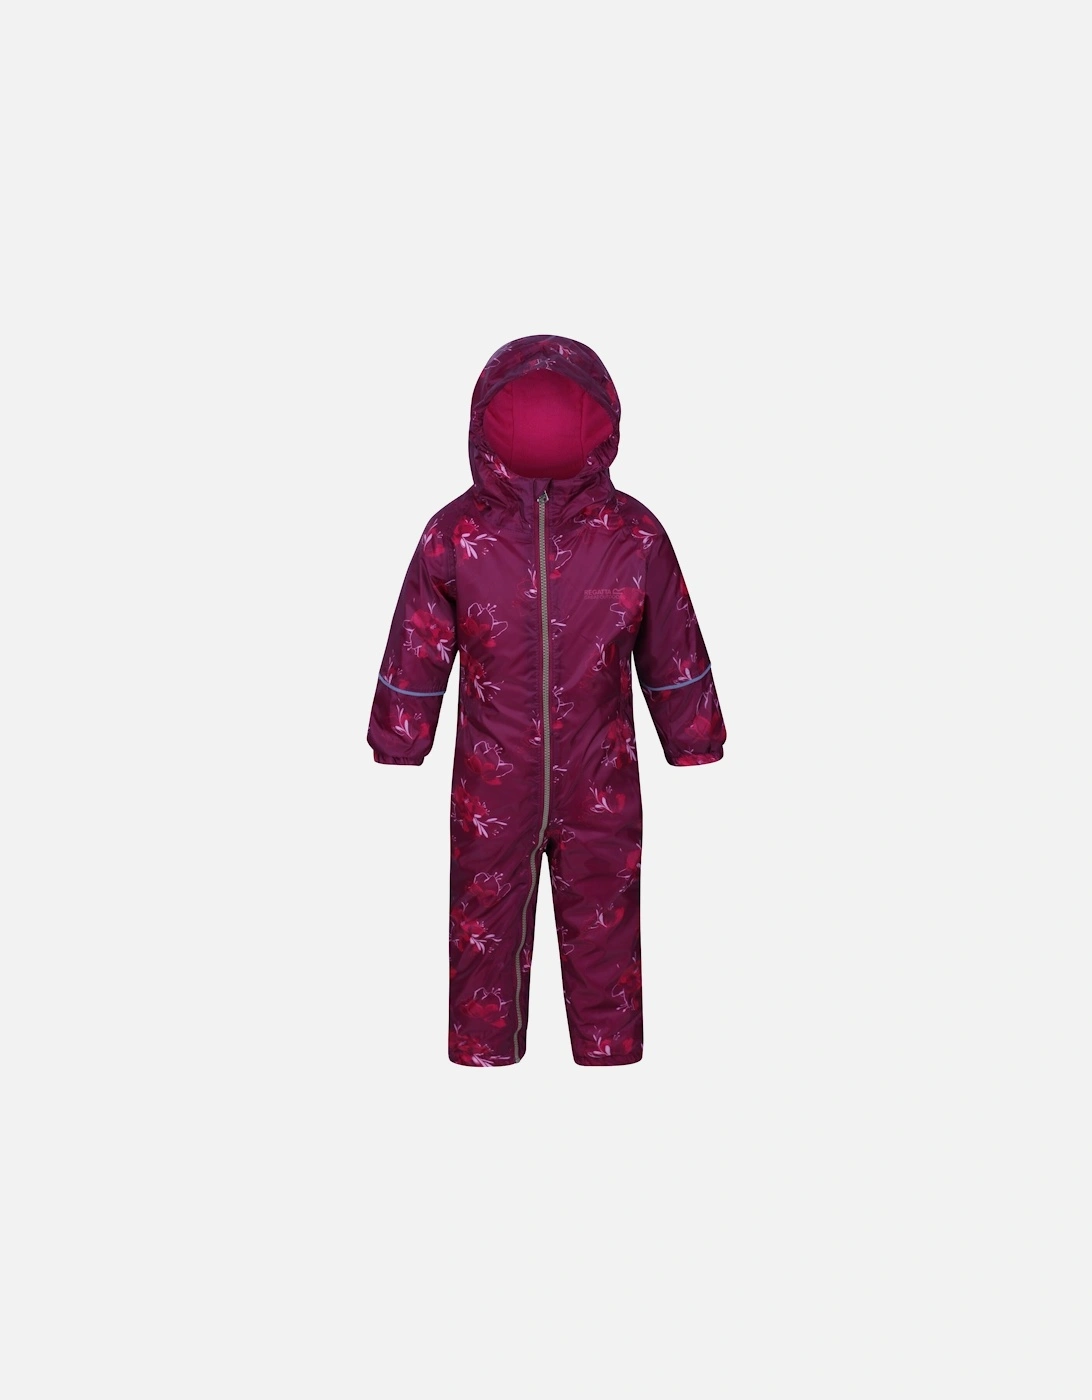 Childrens/Kids Printed Splat II Hooded Rainsuit